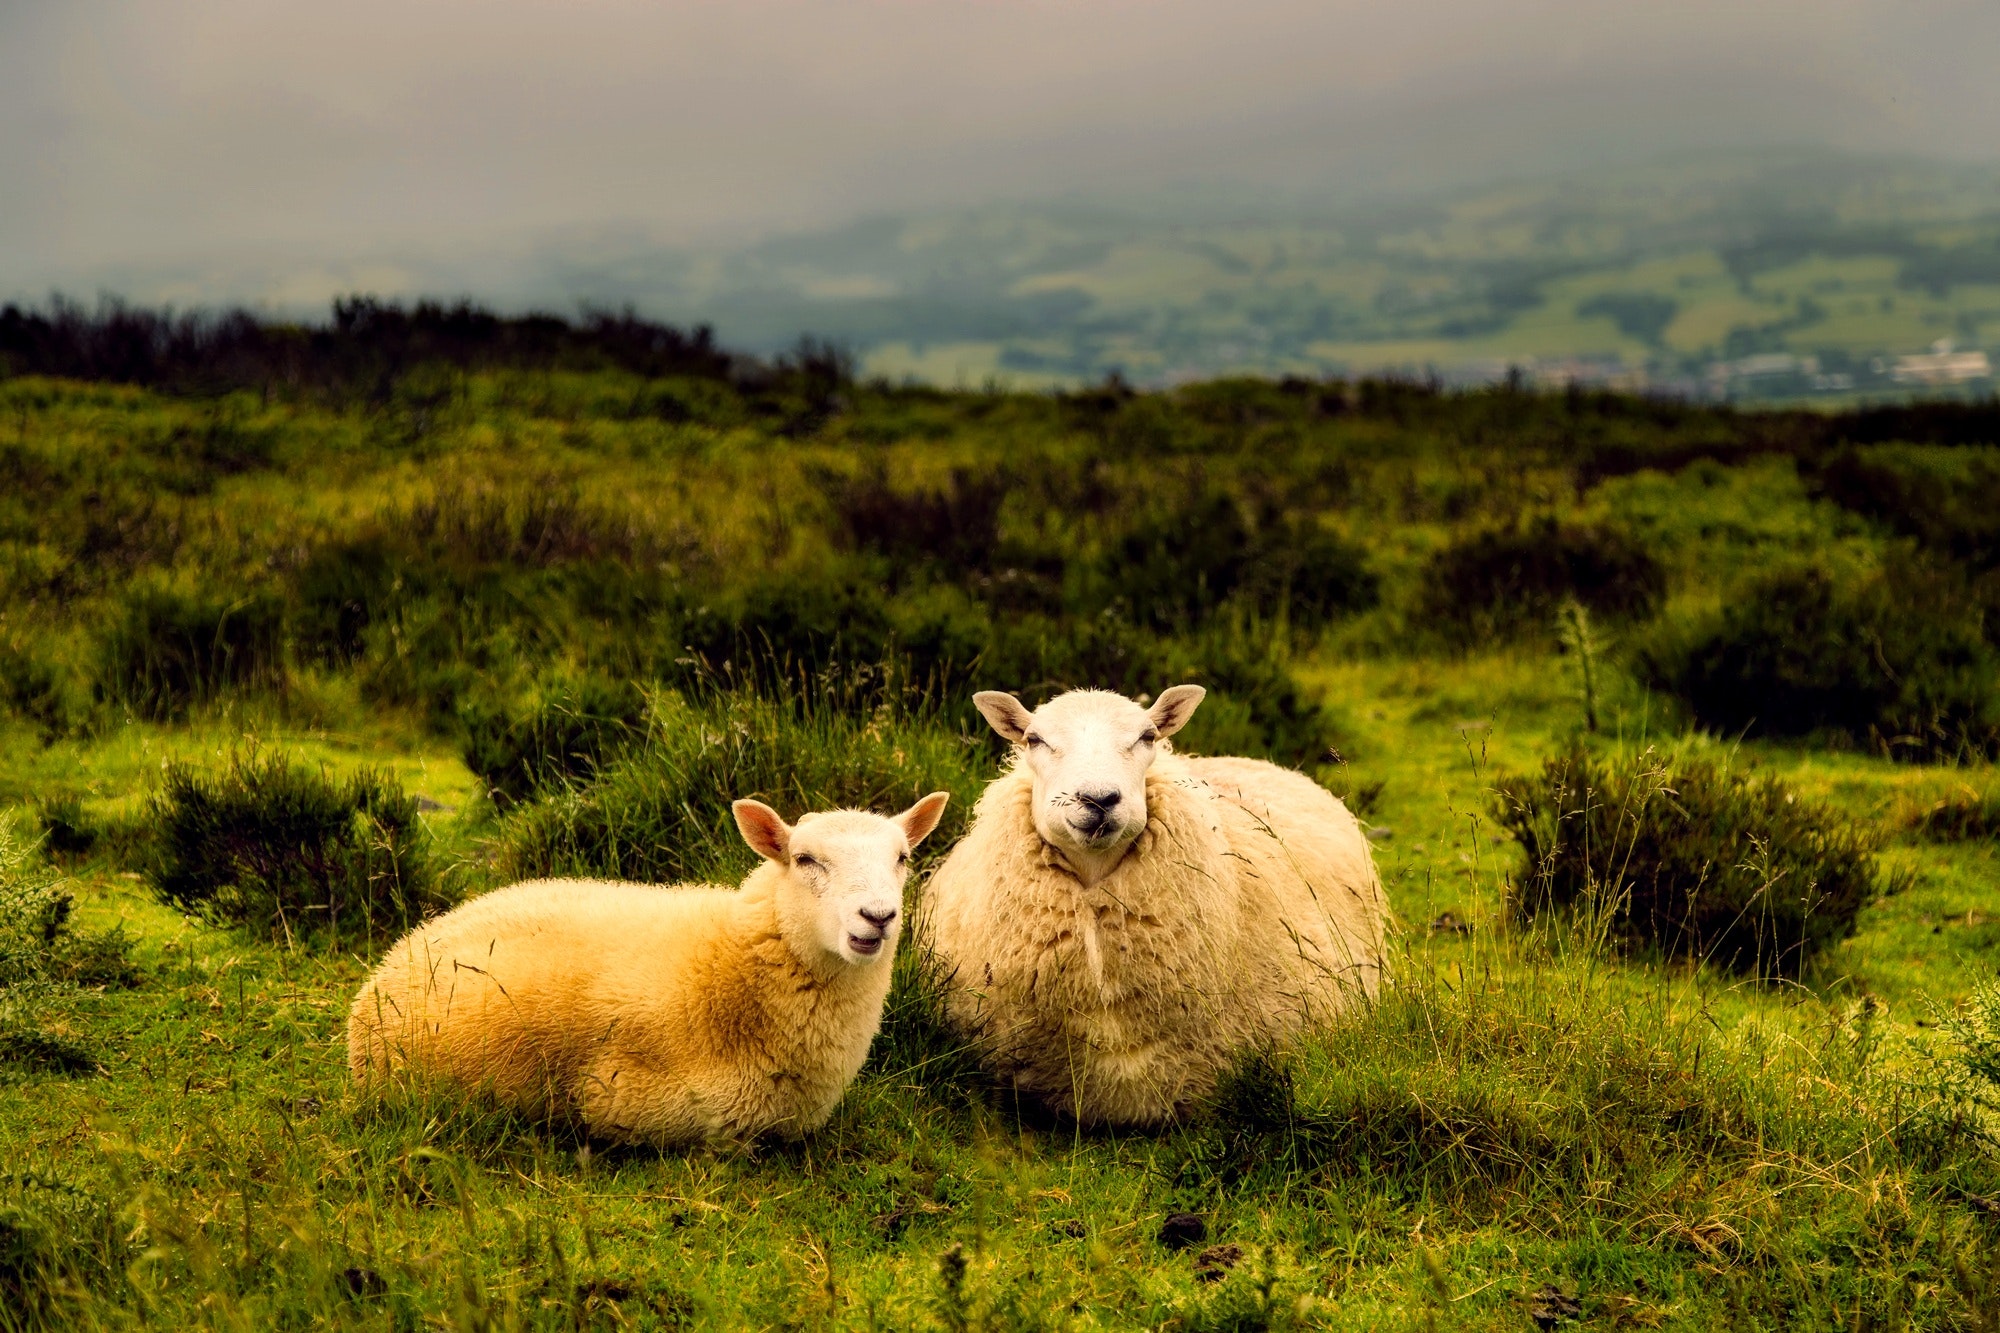 Best sheep photos